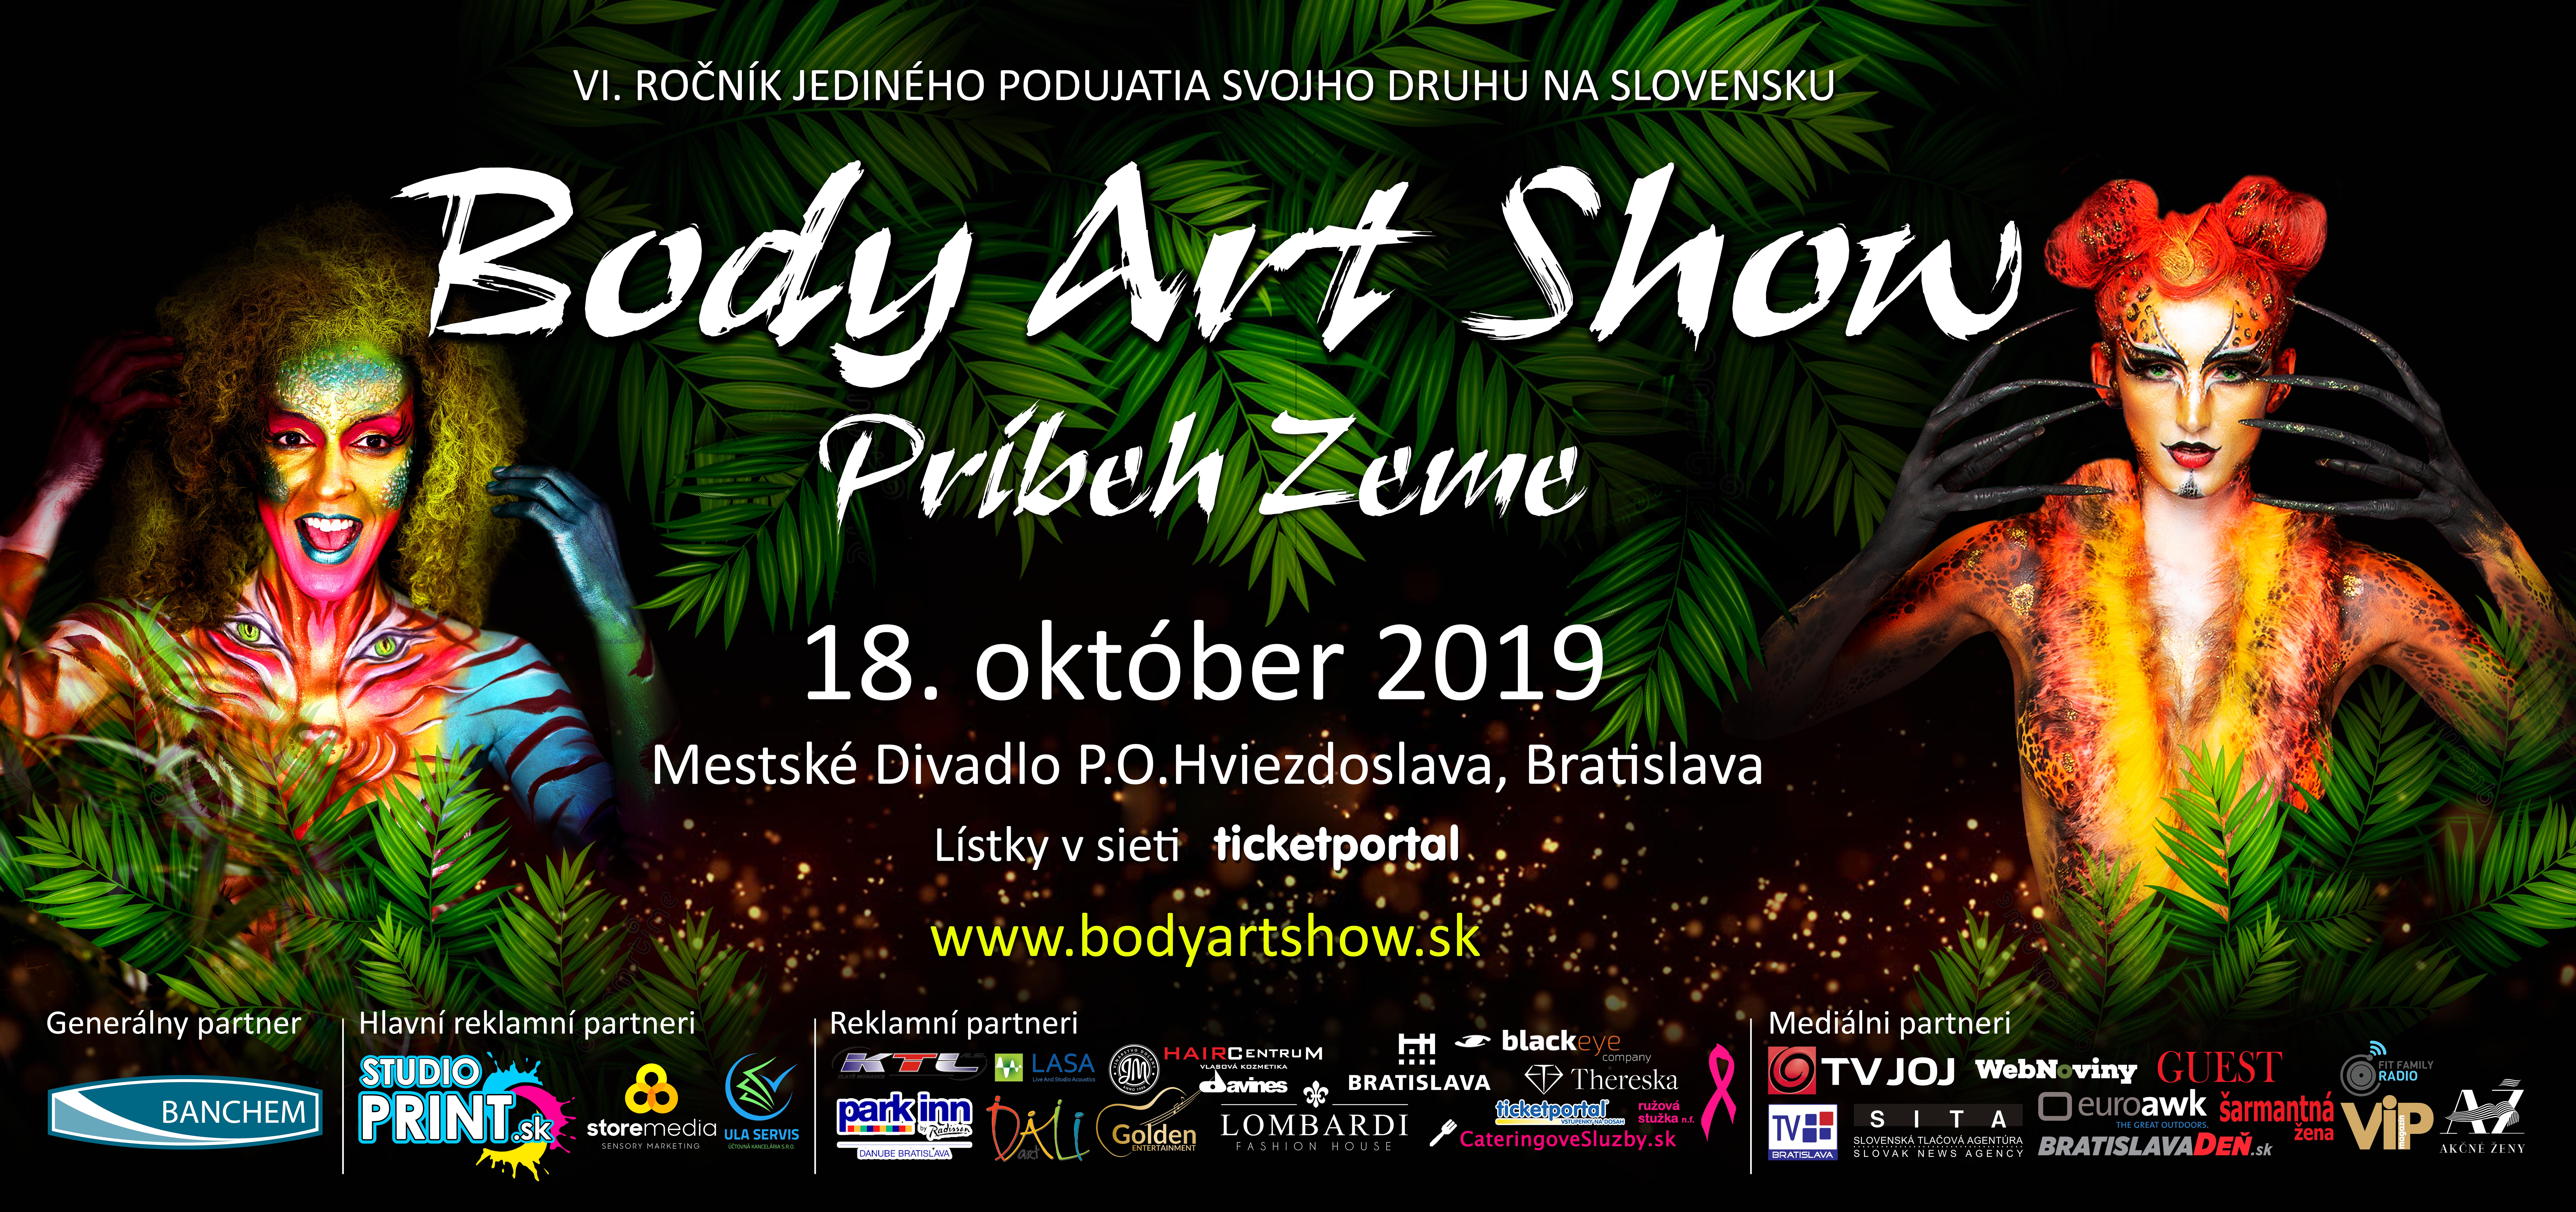 Body art show 2019 bilboard 510x240.jpg